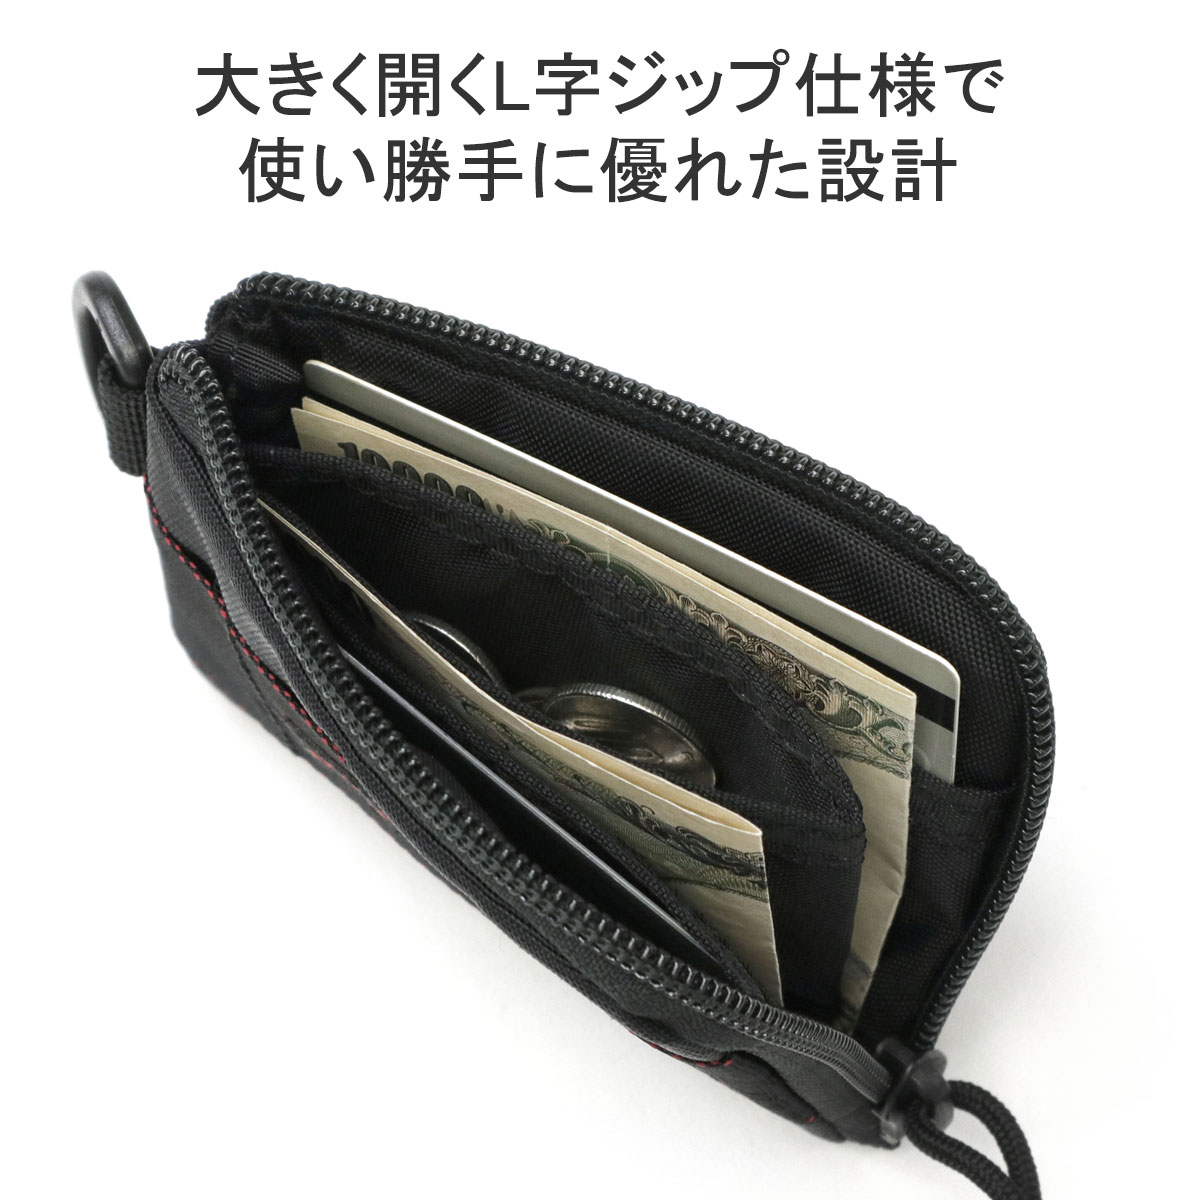 最大40% 5/5限定 日本正規品 ブリーフィング 財布 メンズ 